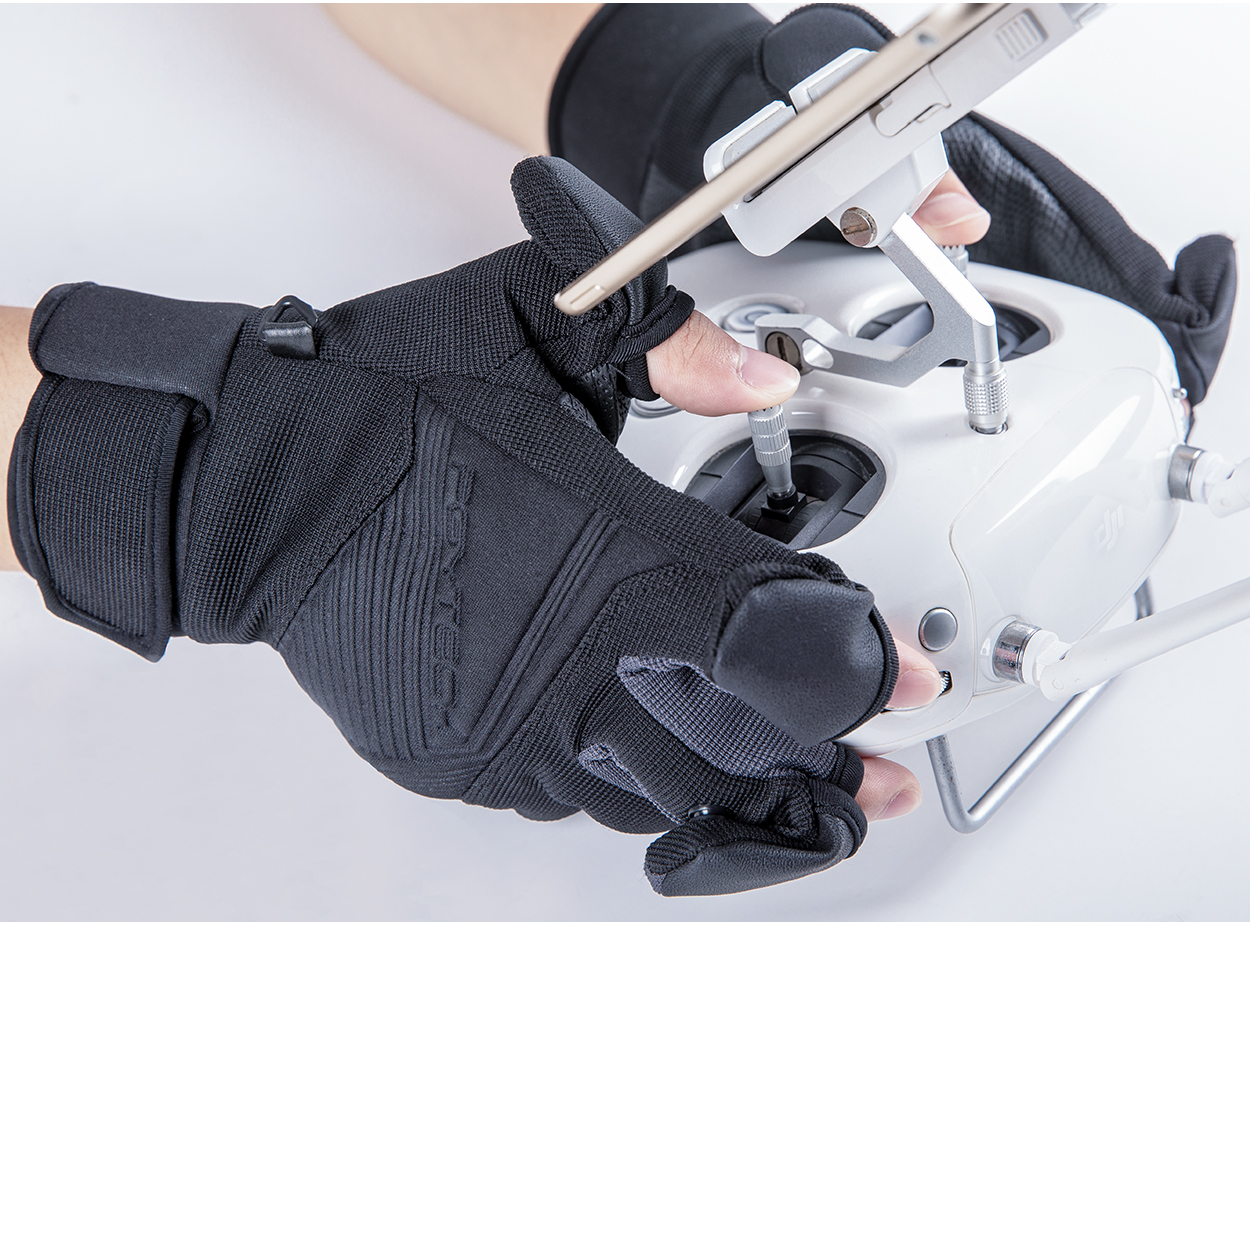 Găng tay máy ảnh – PGYtech Photography gloves - hàng chính hãng - Size M